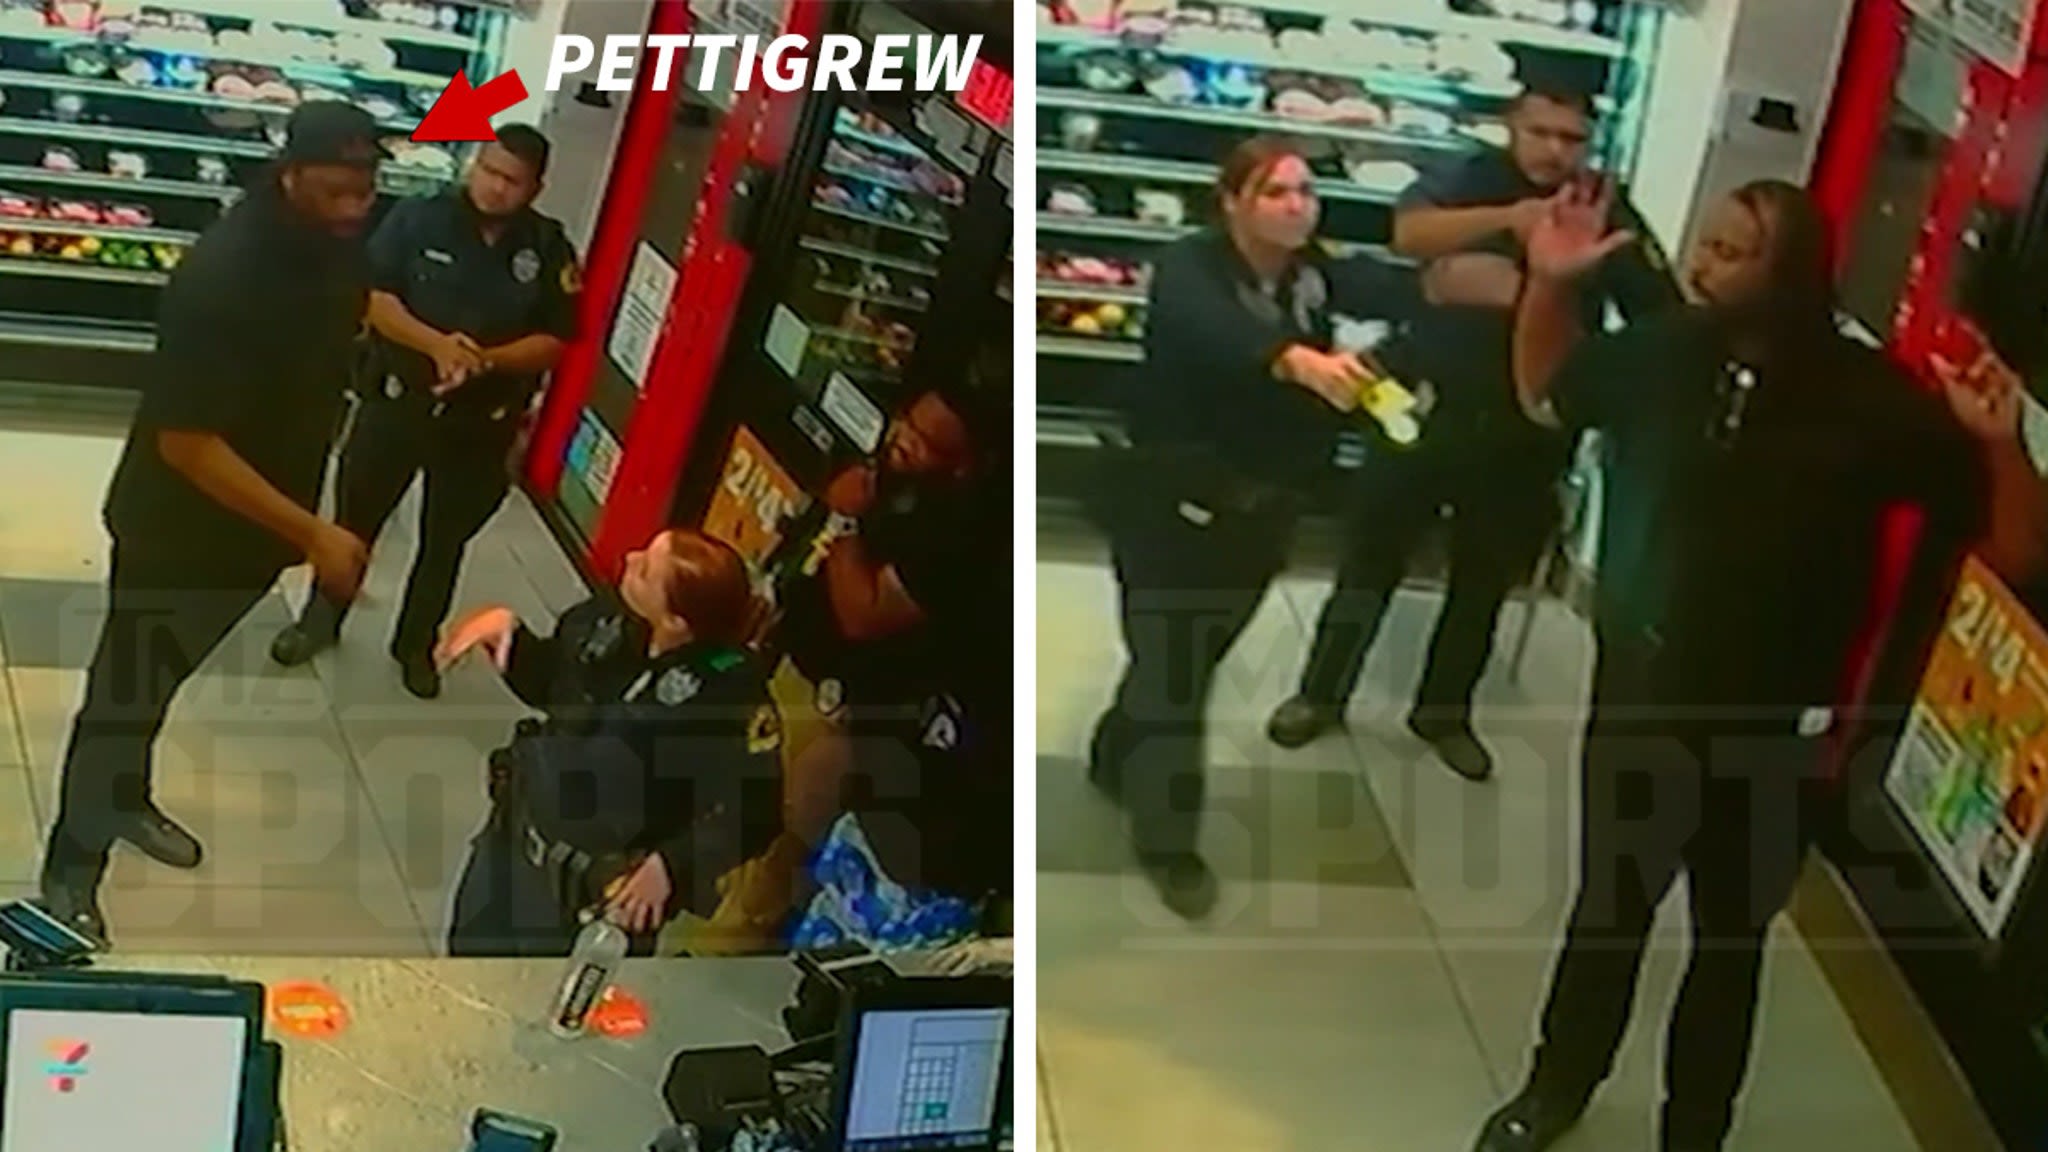 Ex-NFLer Brandon Pettigrew Arrested After Punching, Breaking Store's Glass Door